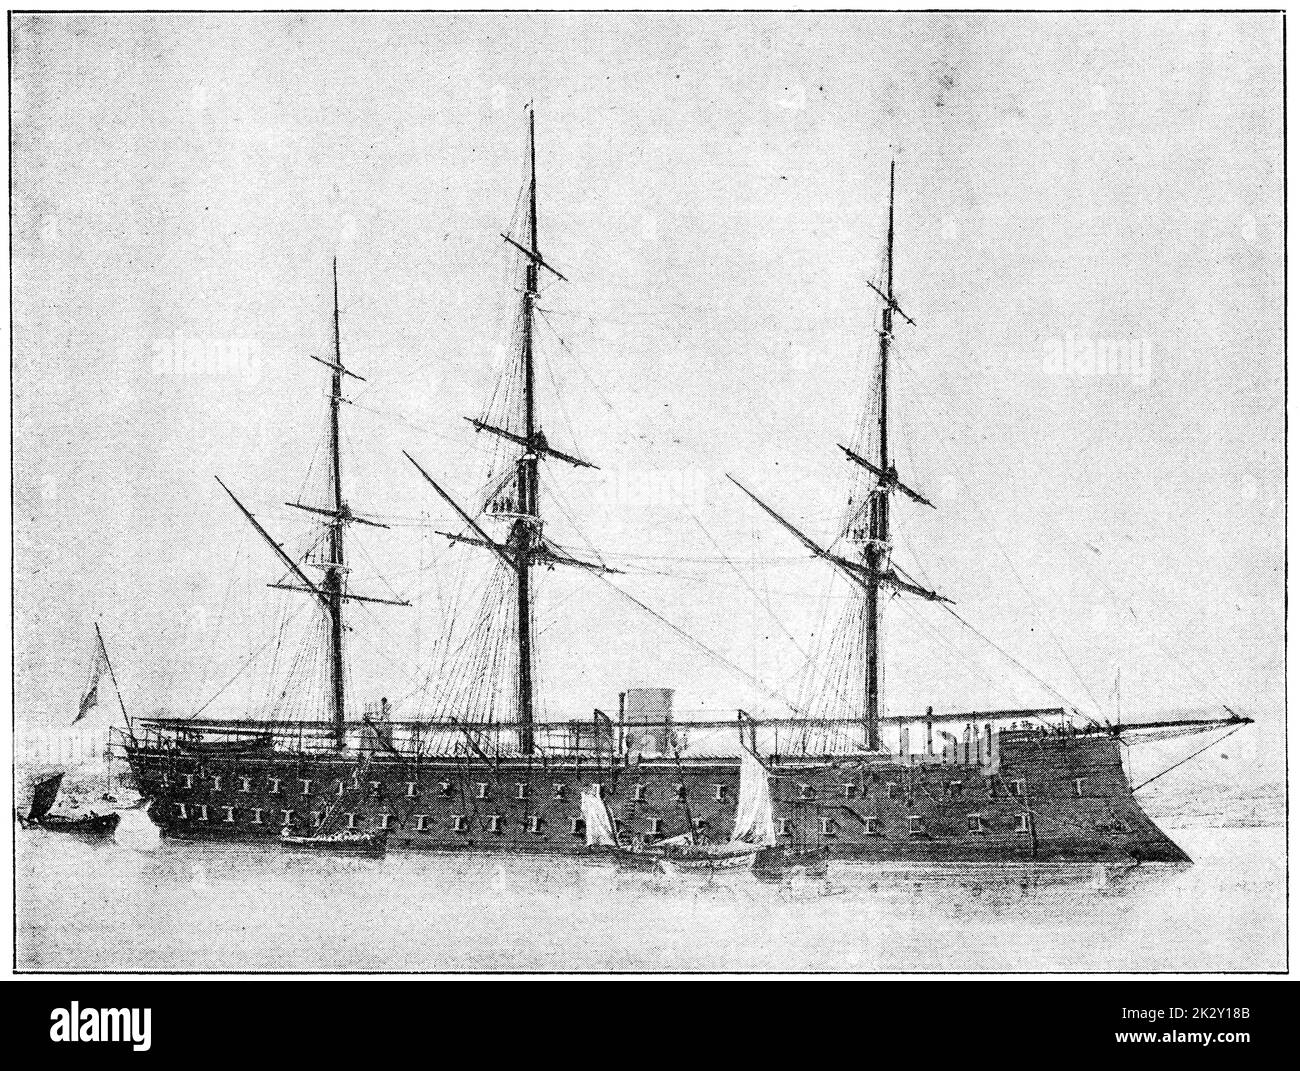 Magenta (1861) - le navire principal de sa classe de deux ironnades grand-côté construites pour la Marine française. Illustration du 19e siècle. Allemagne. Arrière-plan blanc. Banque D'Images